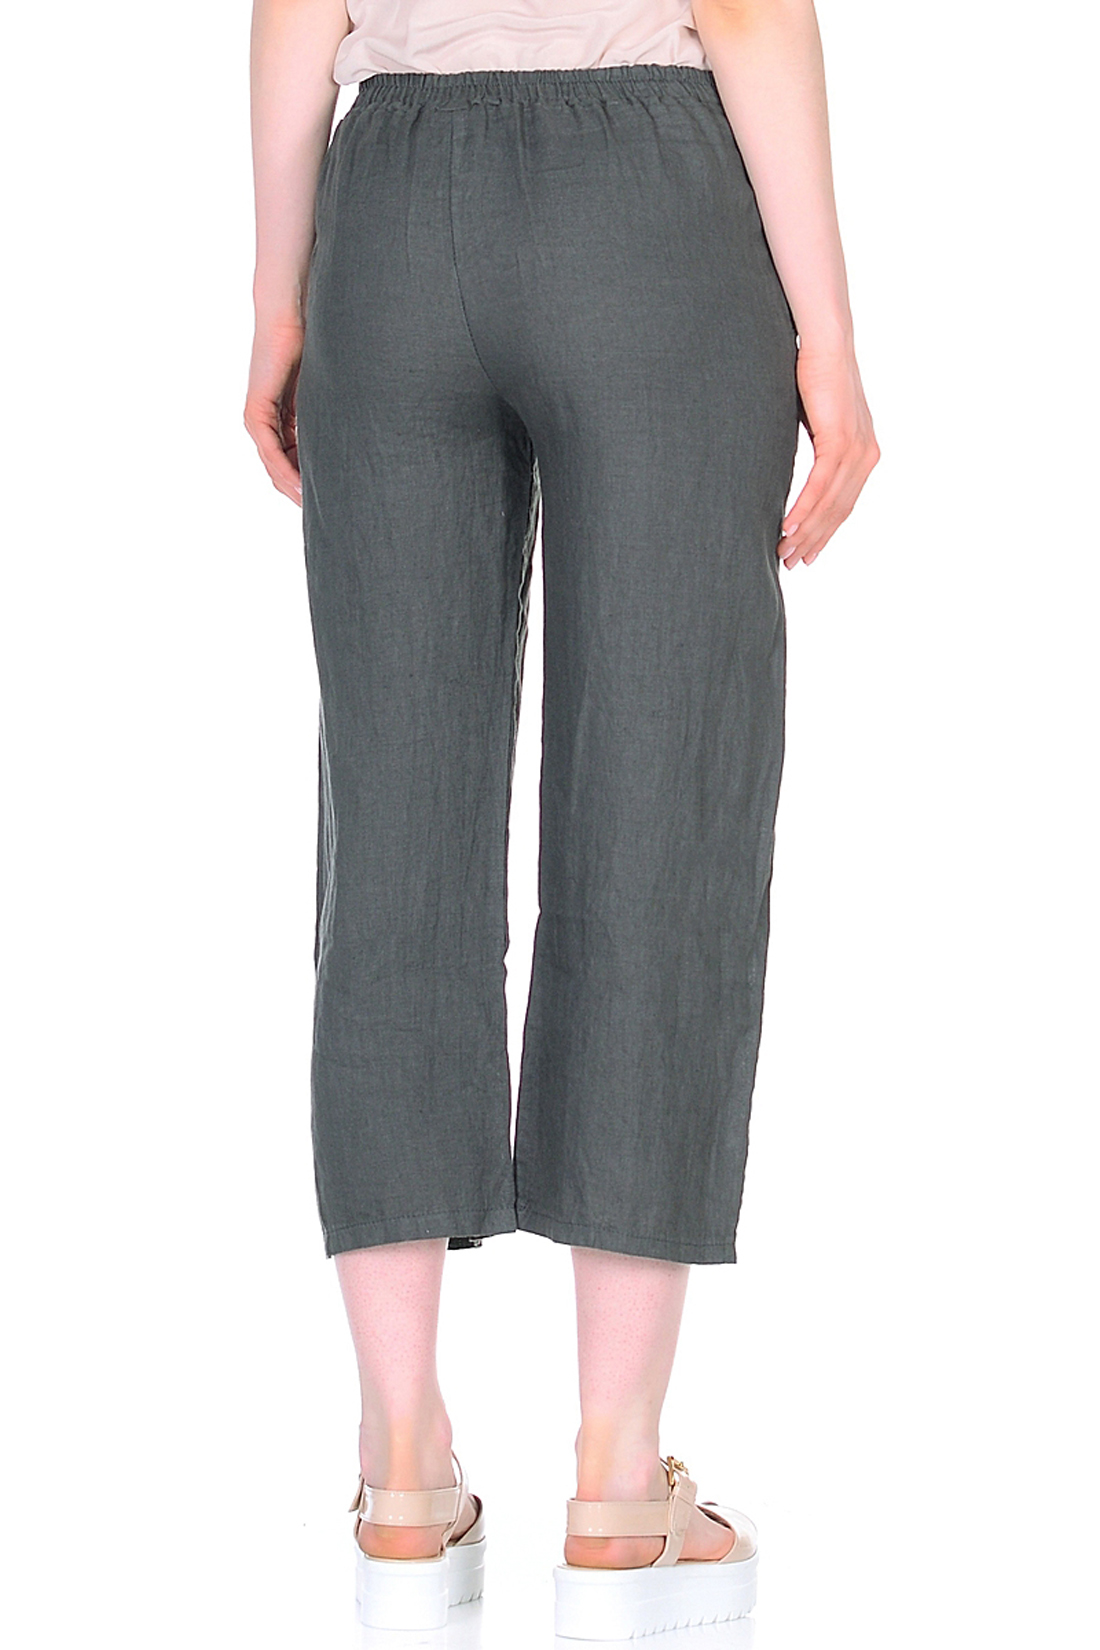 Льняные брюки-кюлоты (арт. baon B298036), размер L, цвет серый Льняные брюки-кюлоты (арт. baon B298036) - фото 2